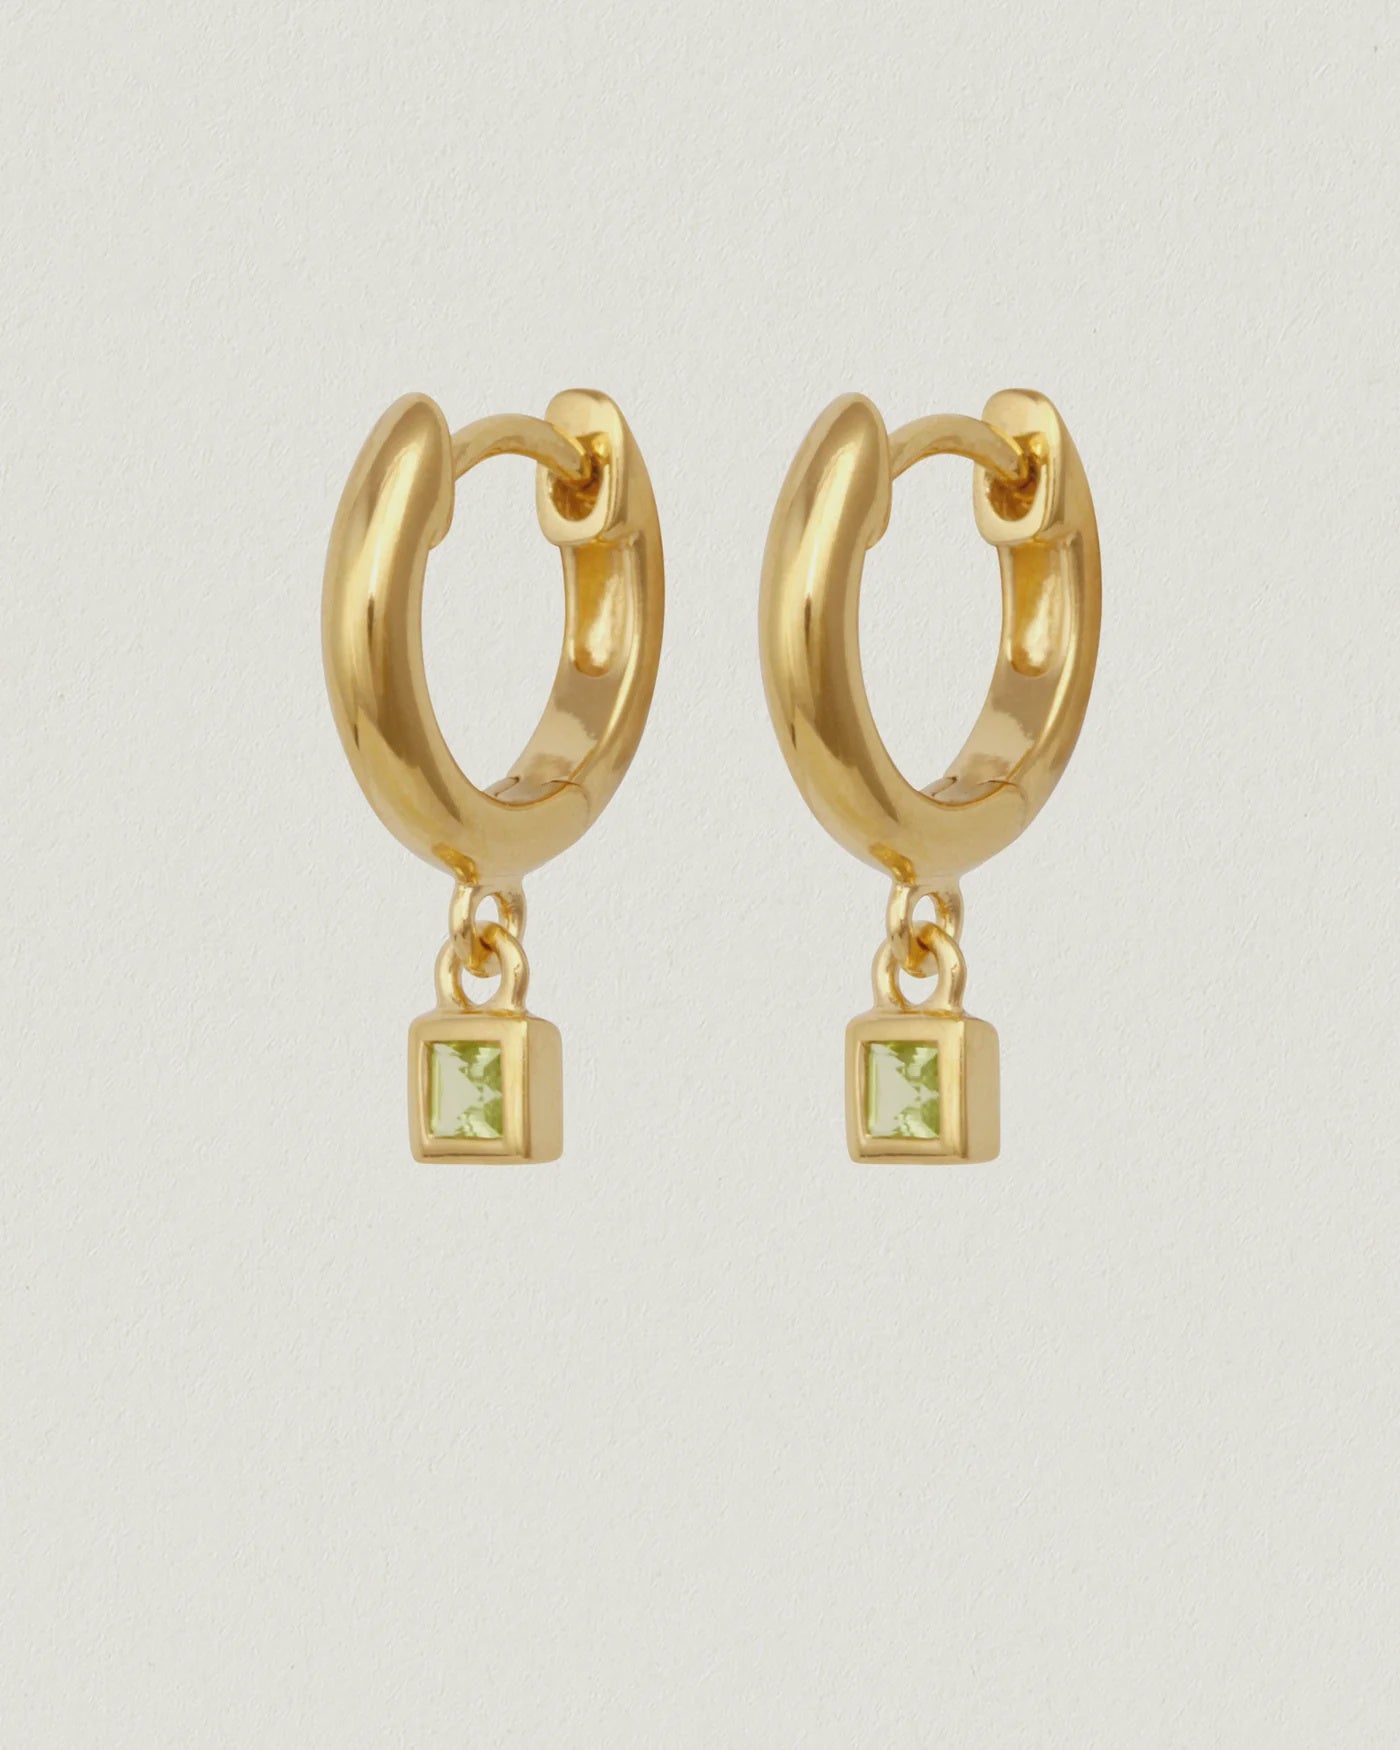 Hebe Earrings - Gold Vermeil